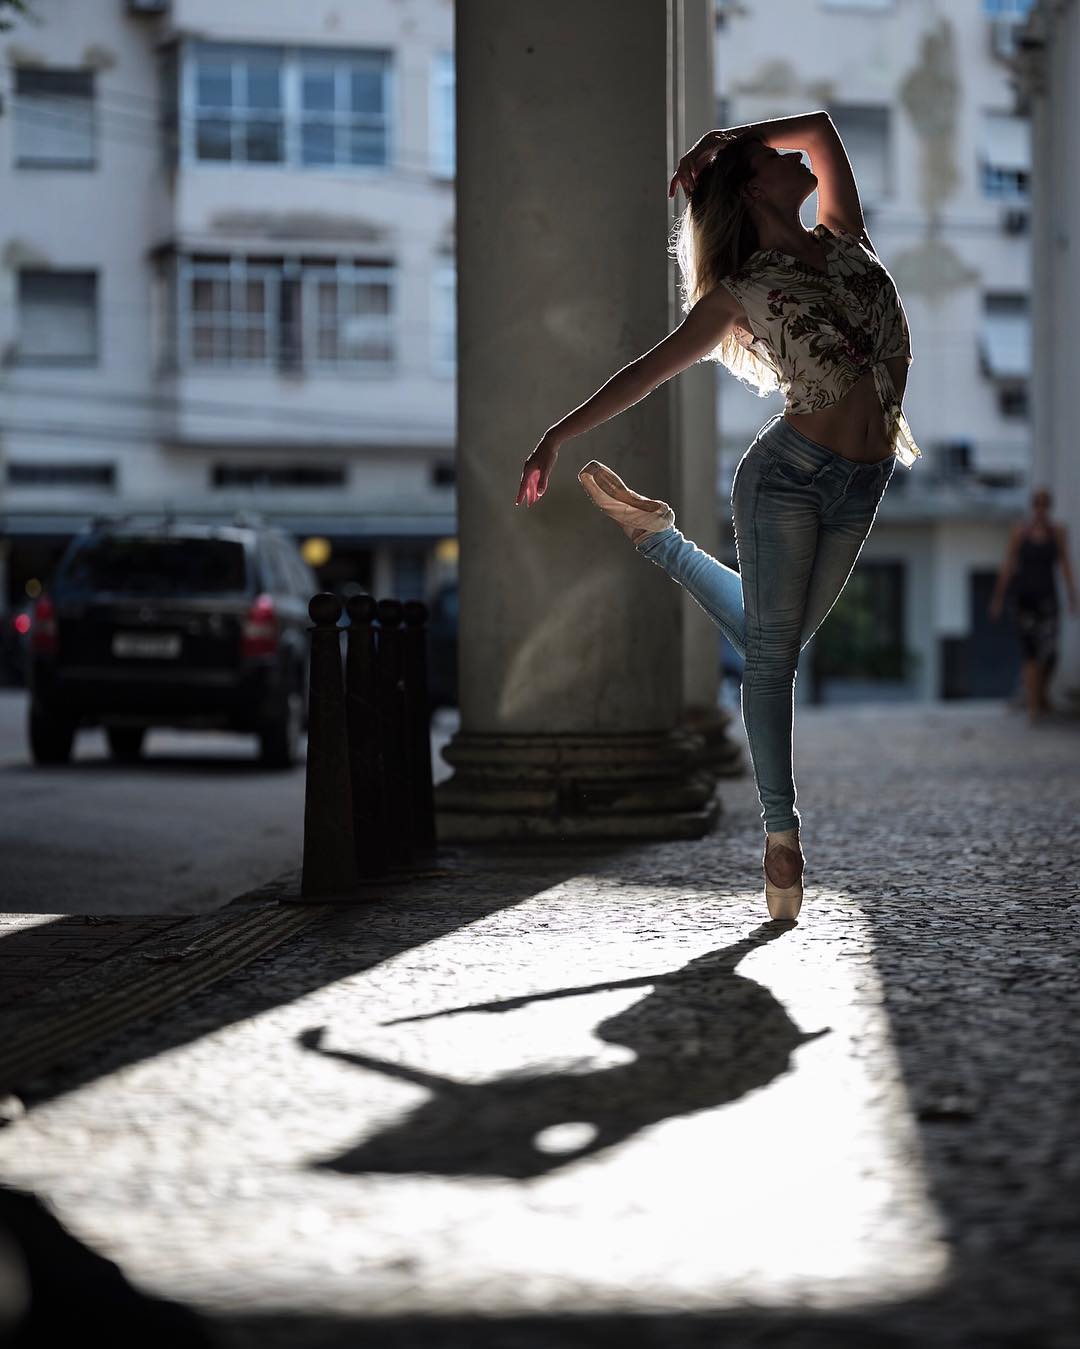 omarzrobles 27579293 137700803711133 9049662393805701120 n 1 - Dançarinos de balé praticam seus movimentos nas ruas para foto